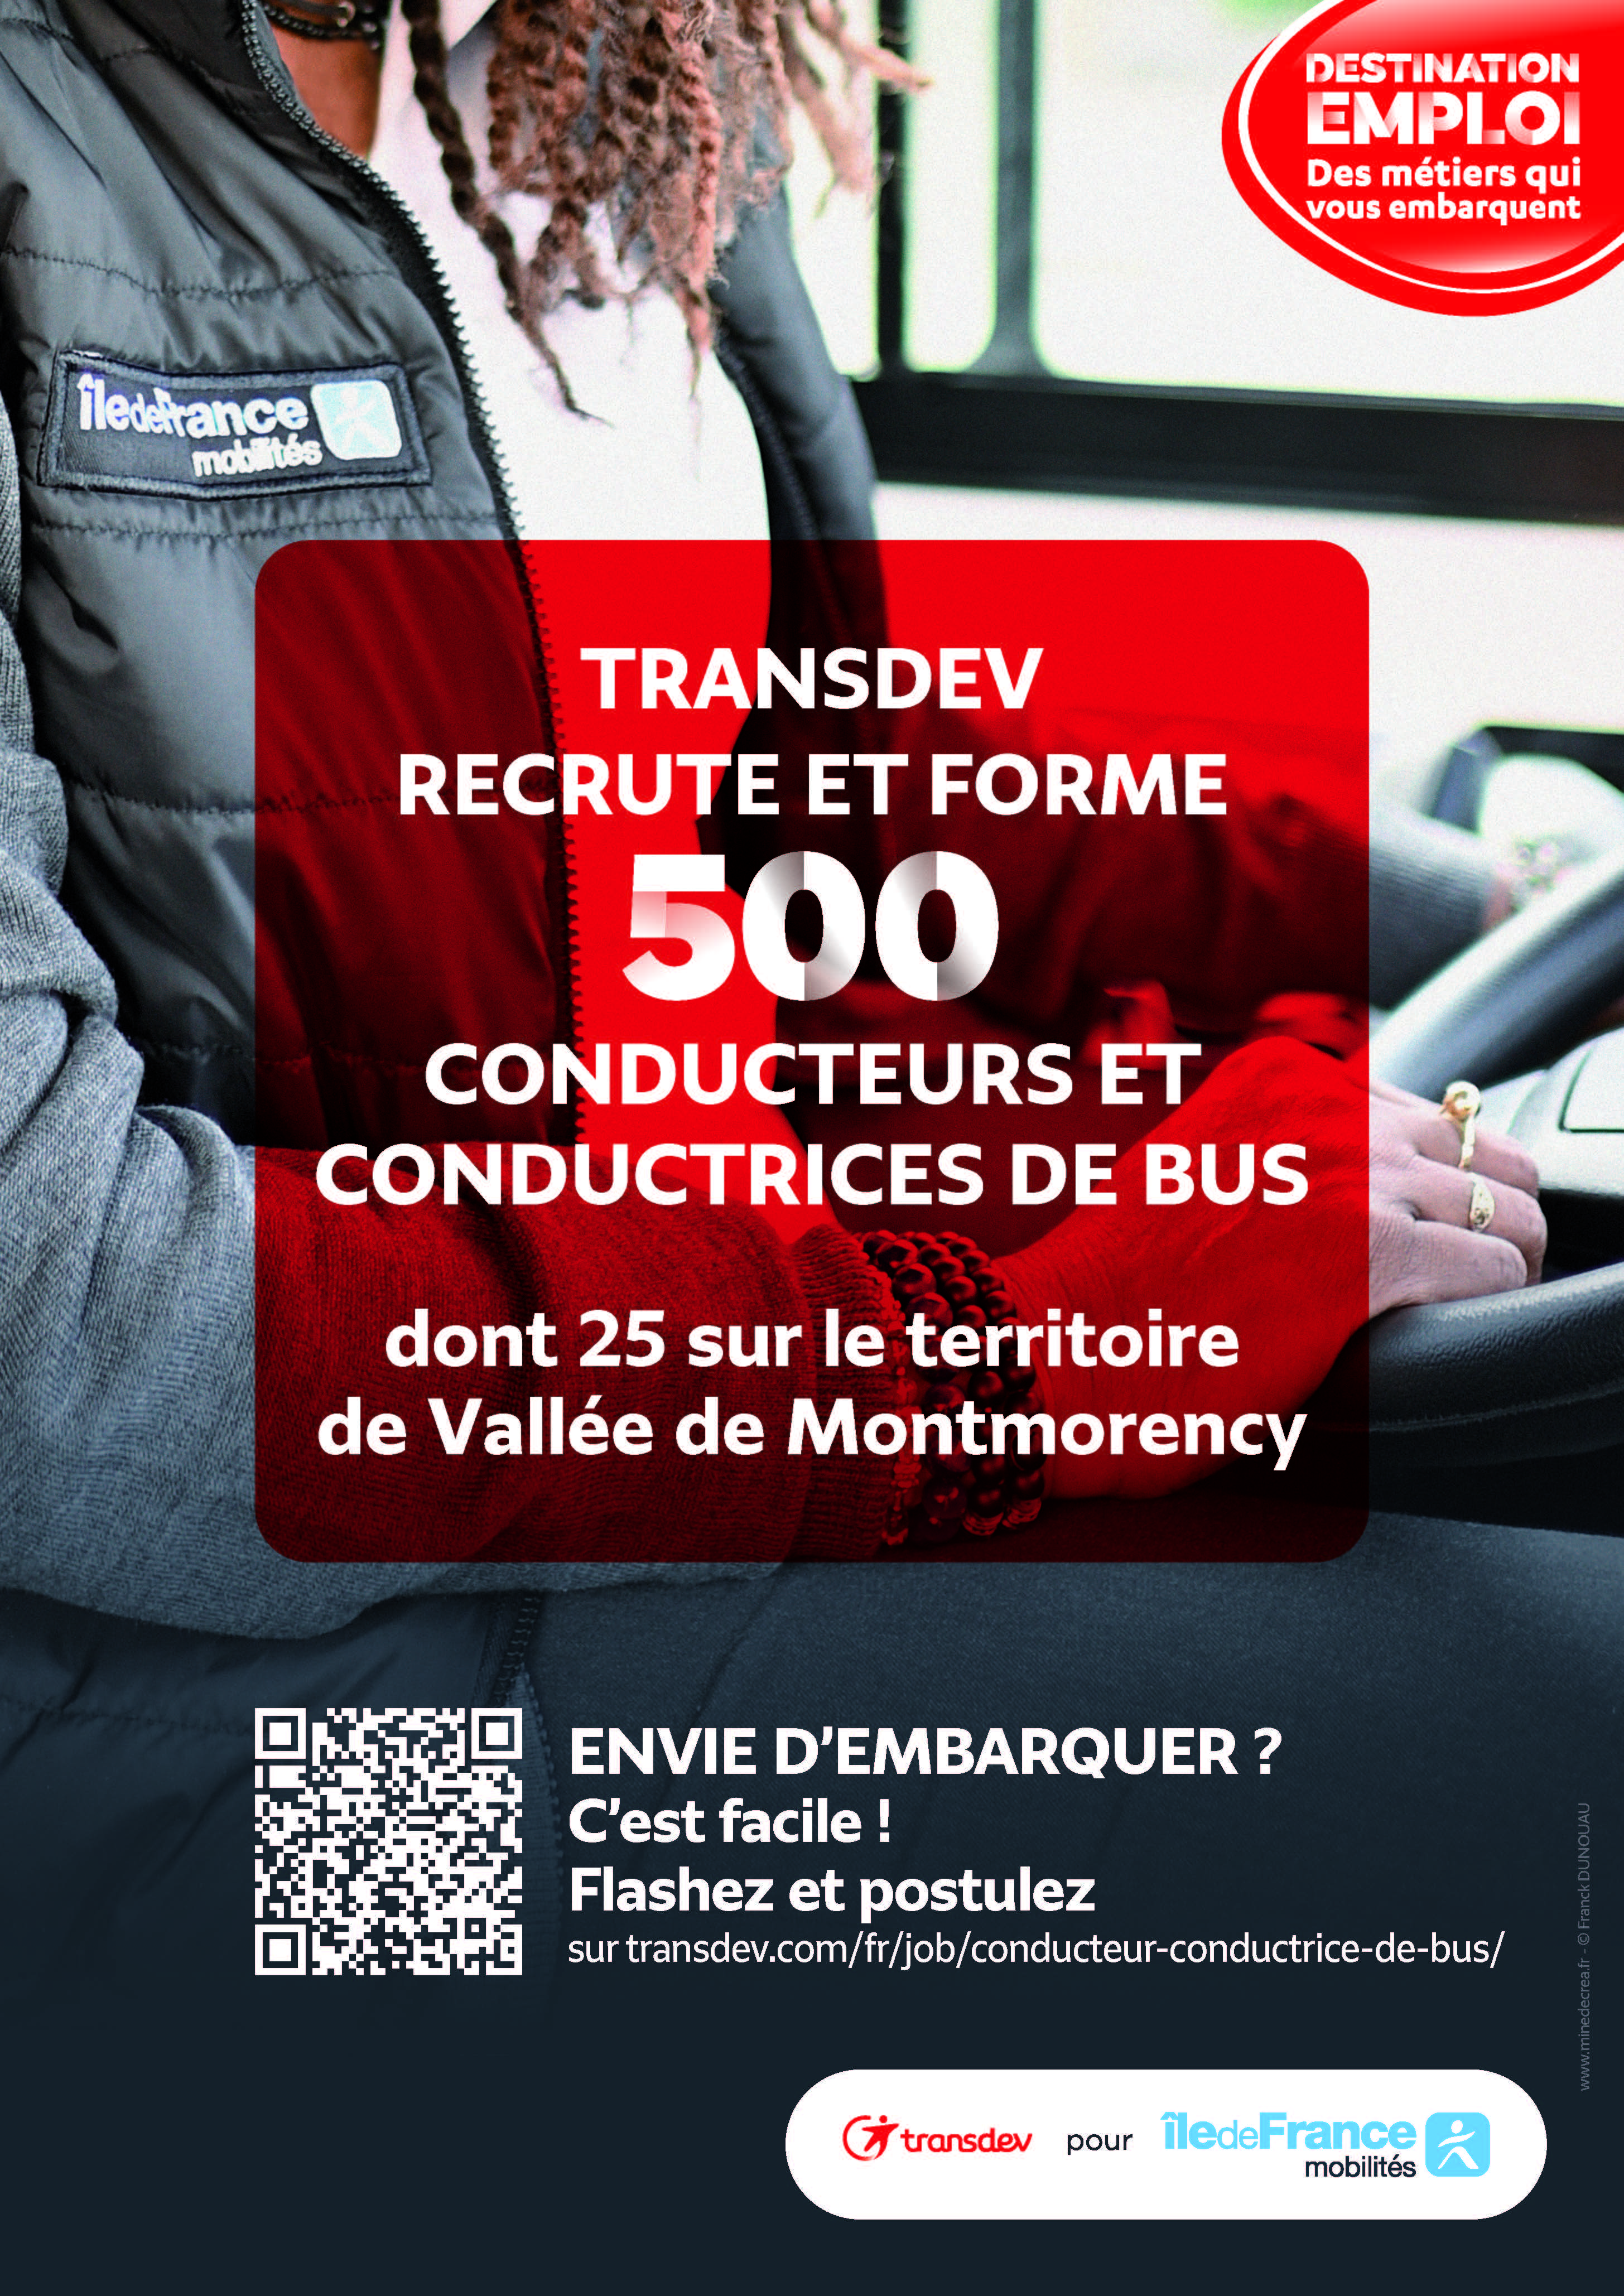 affiche de l'entreprise Transdev qui annonce des offres de recrutements